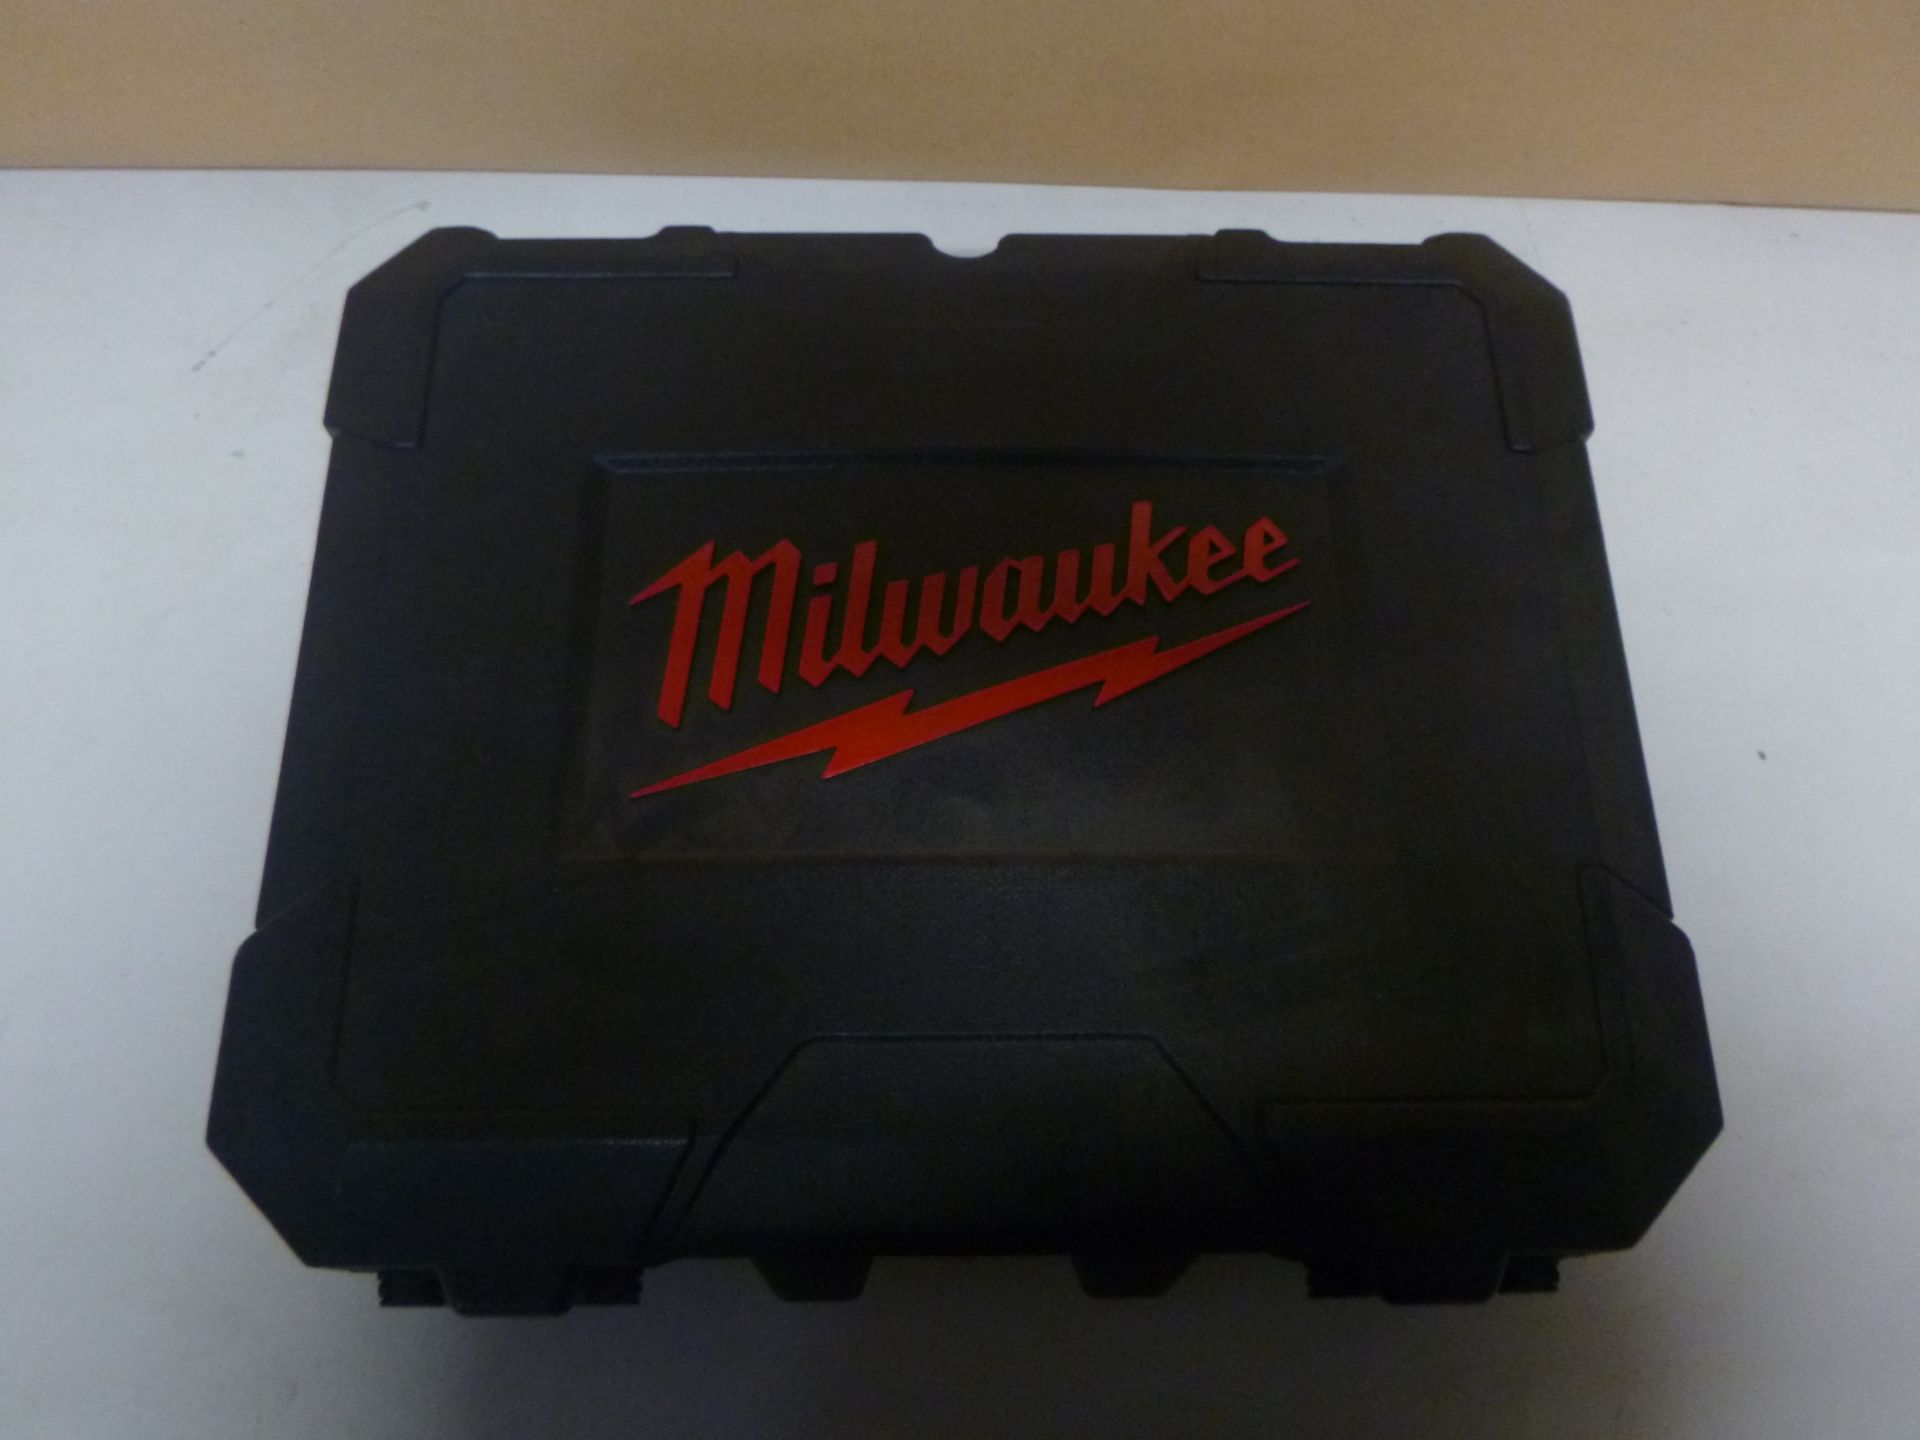 1 x Milwaukee MILM12SET2N Cordless Kits | EAN: 4002395161461 | RRP £297.5 - Image 2 of 2